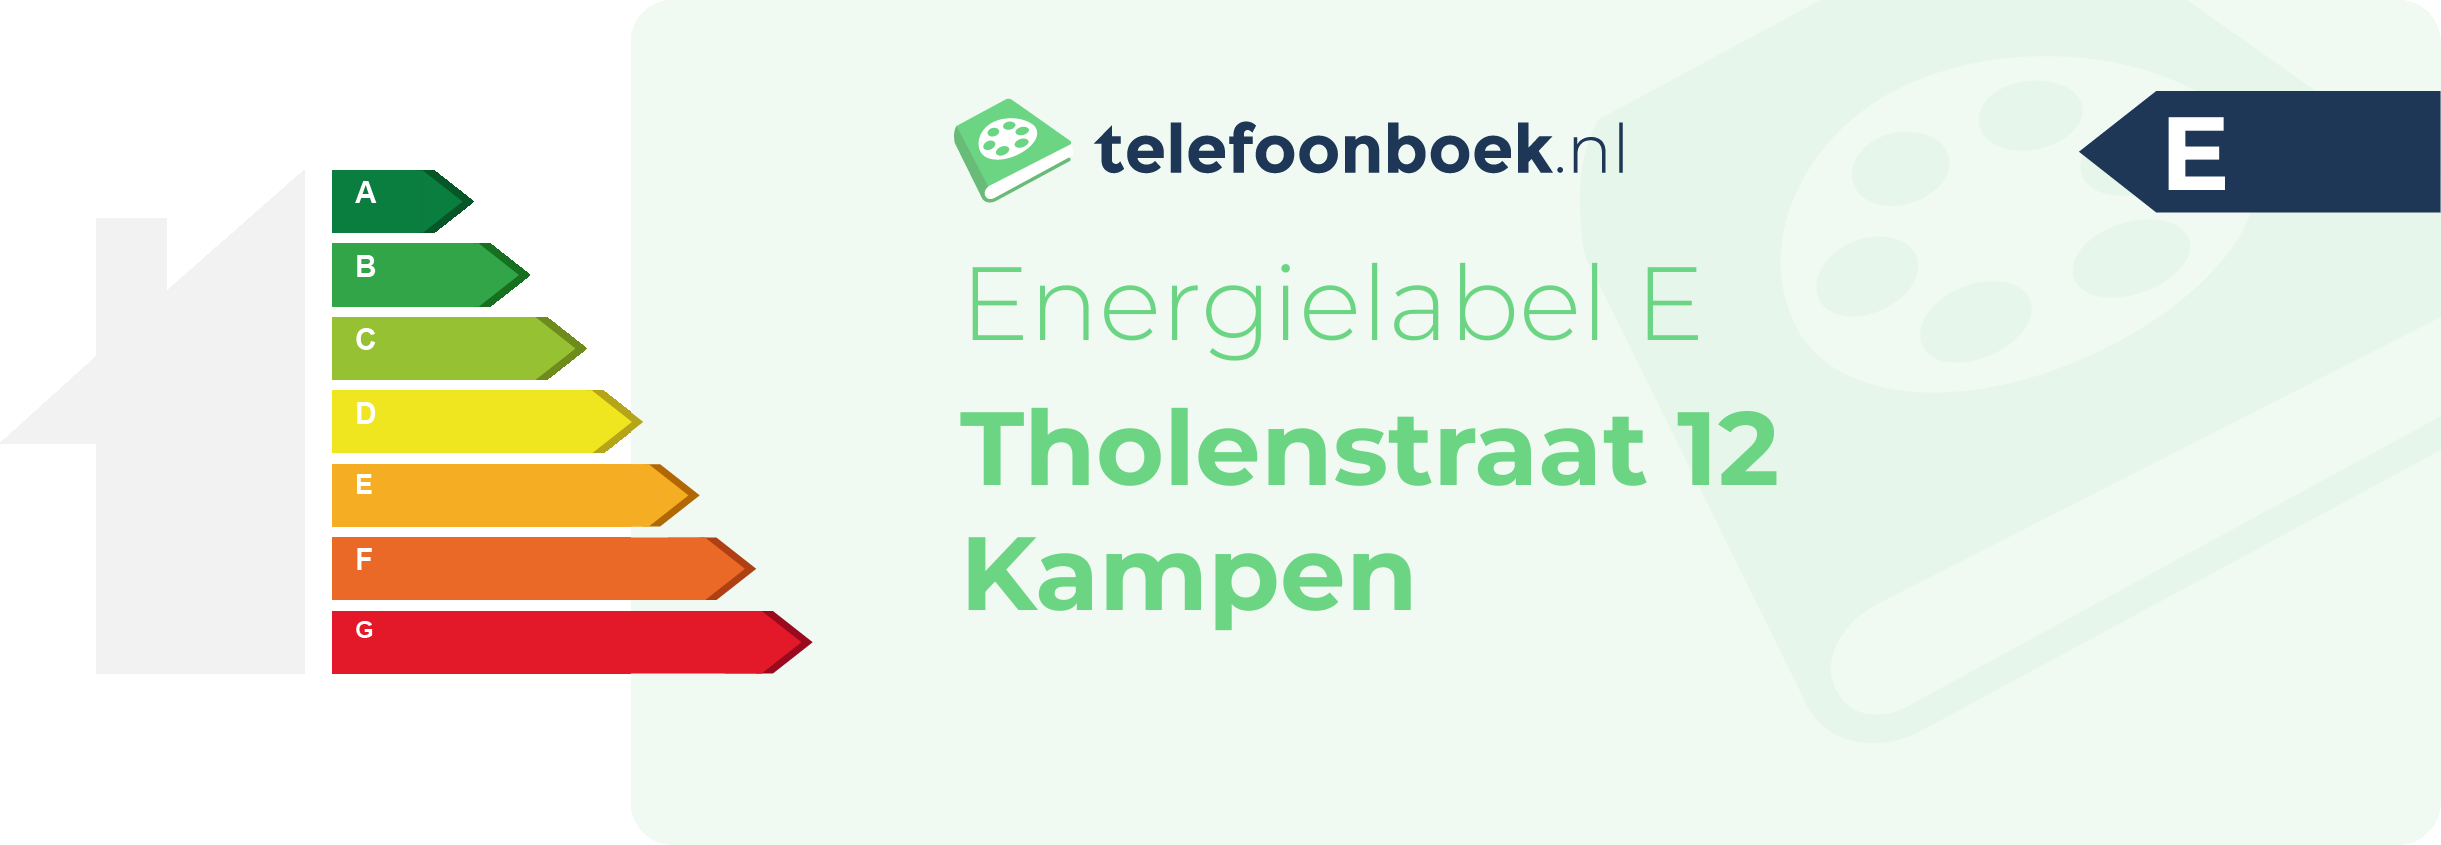 Energielabel Tholenstraat 12 Kampen